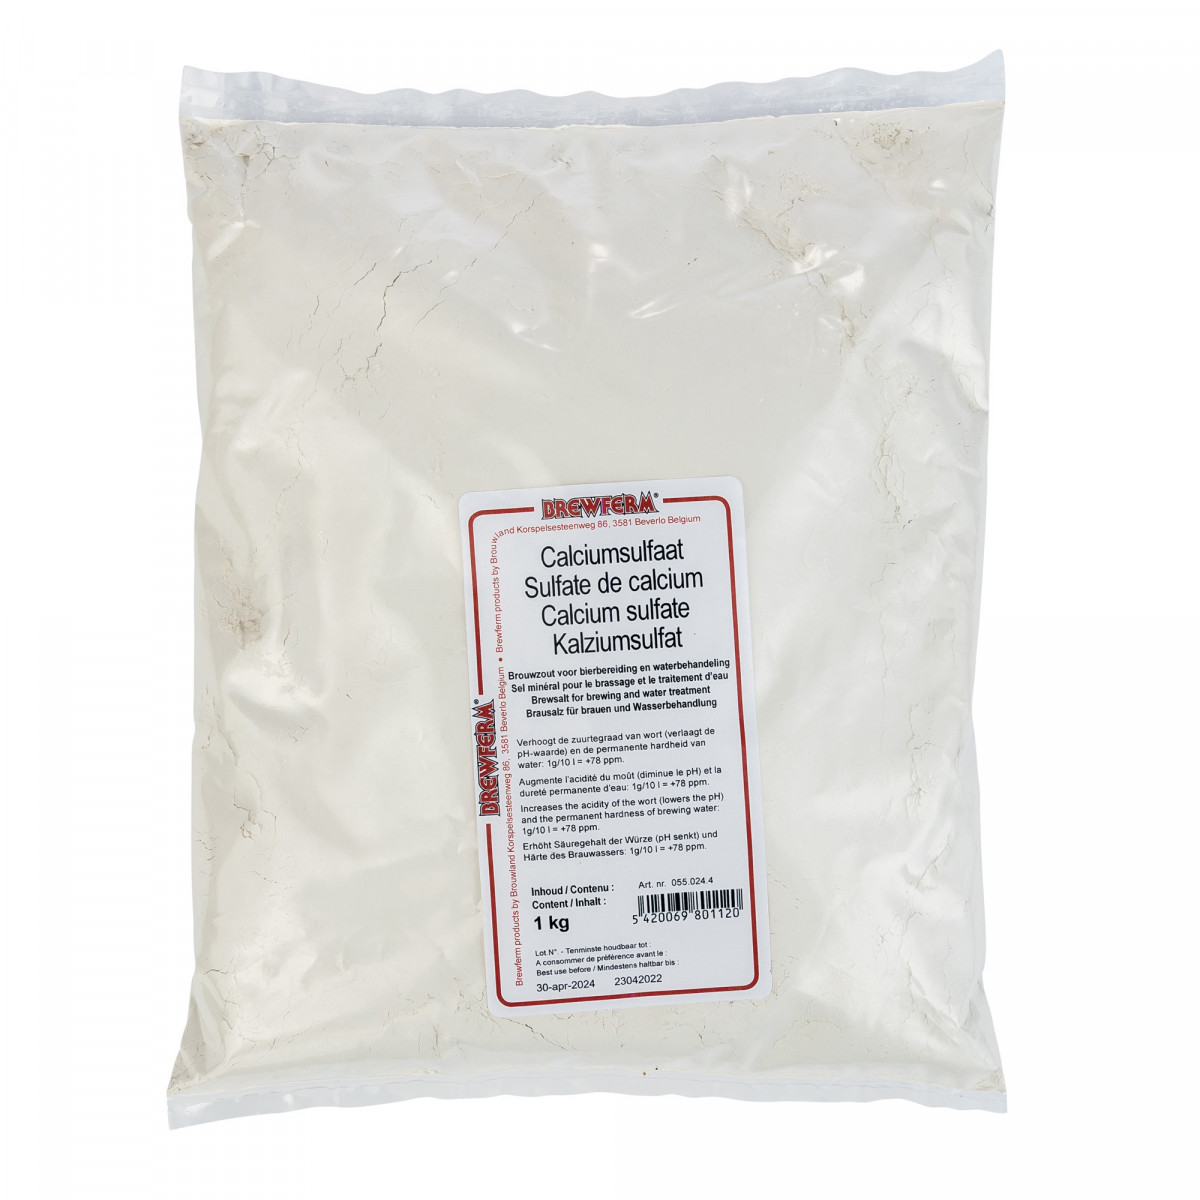 Calcium sulphate 1 kg